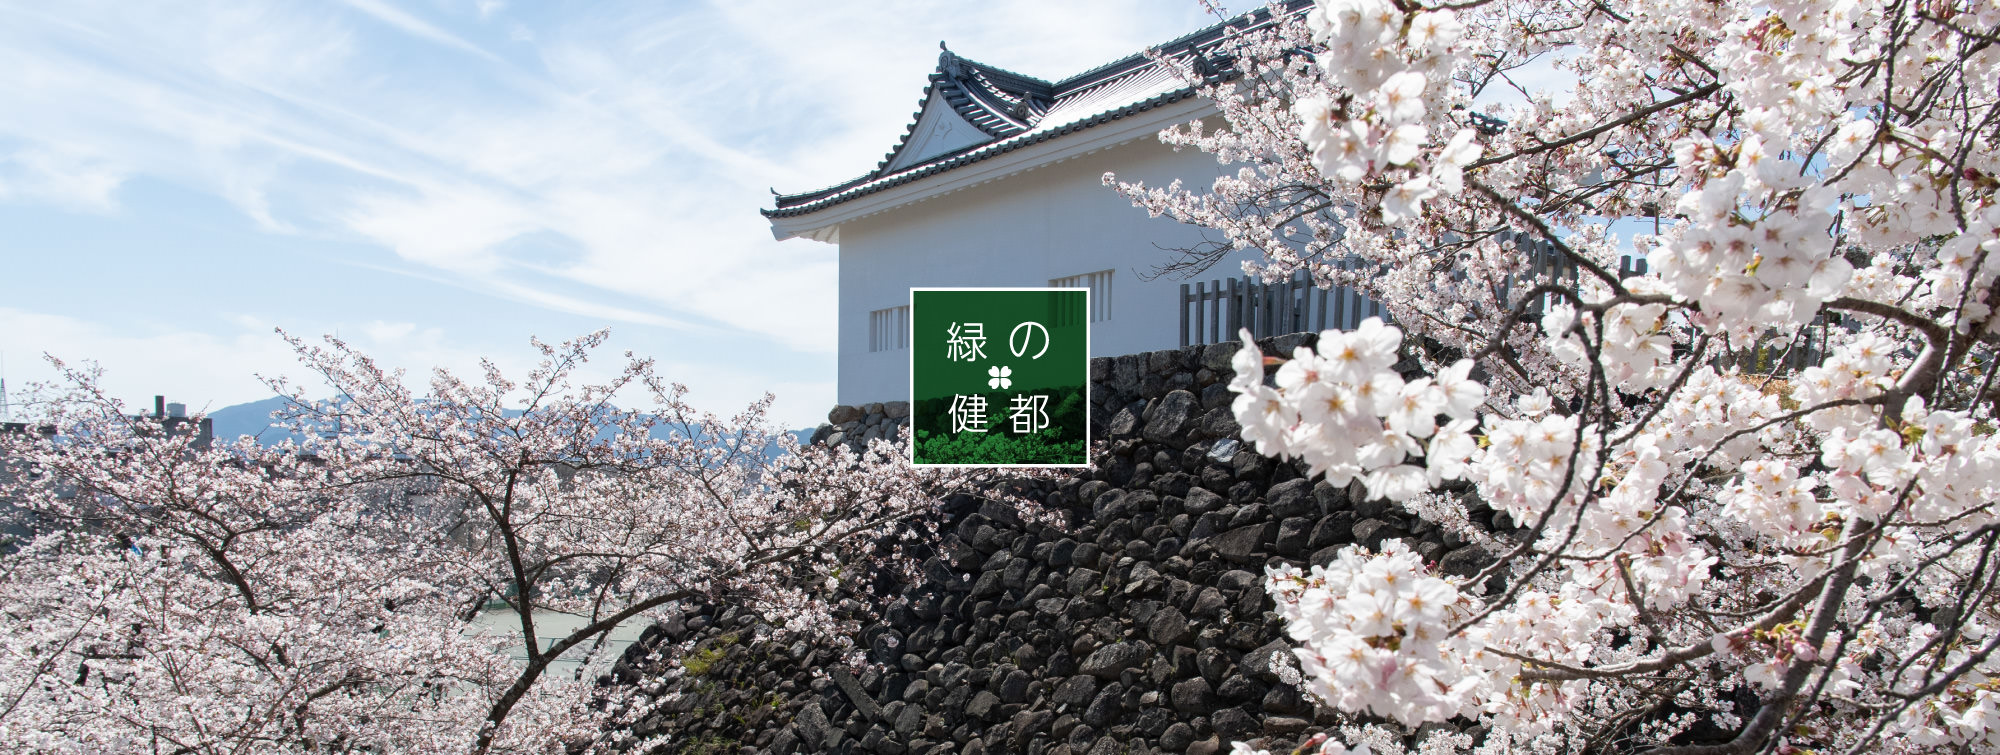 旧亀山城多門櫓と桜